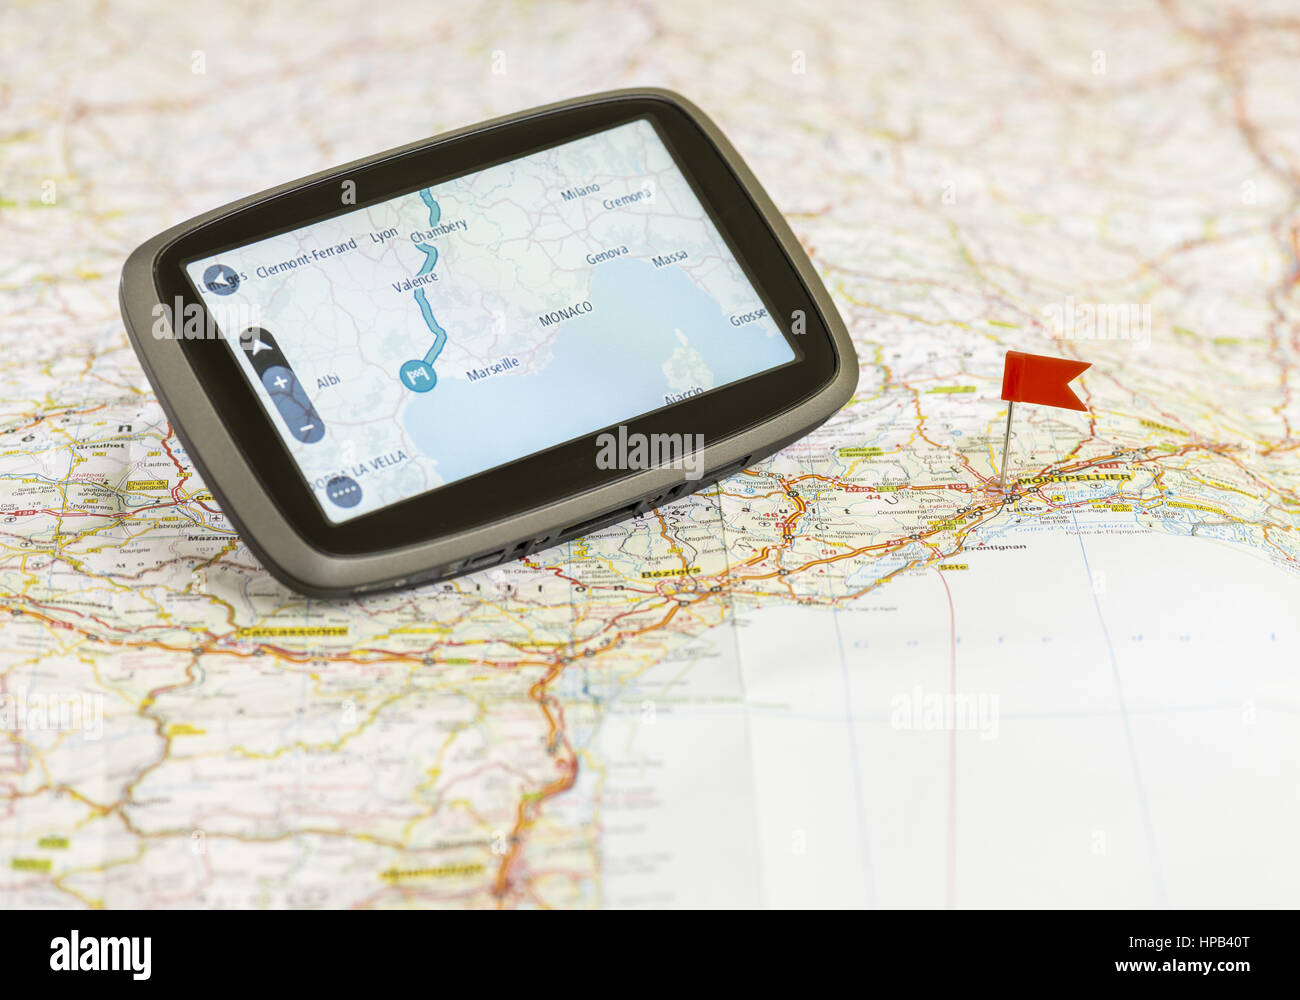 Navigationsgeraet auf einer Landkarte Stock Photo